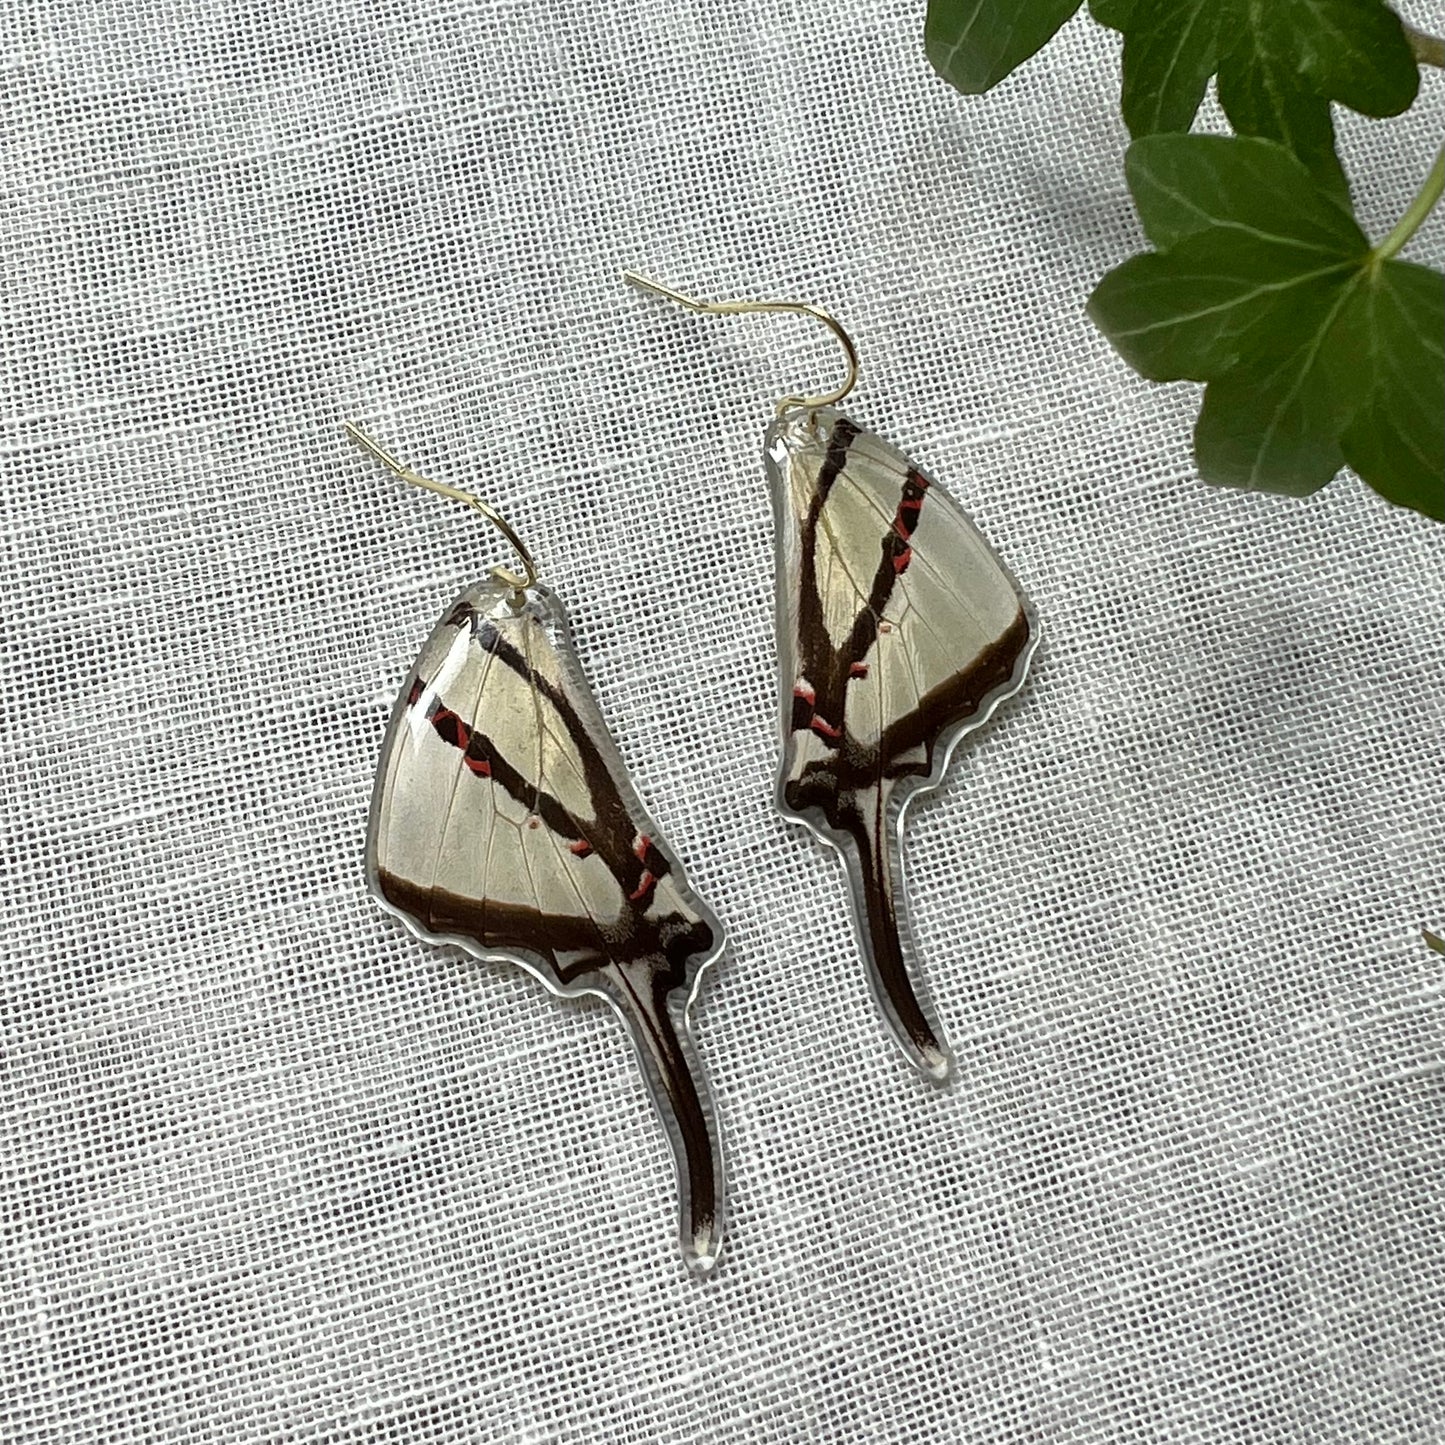 Zebra Swallowtail Earrings